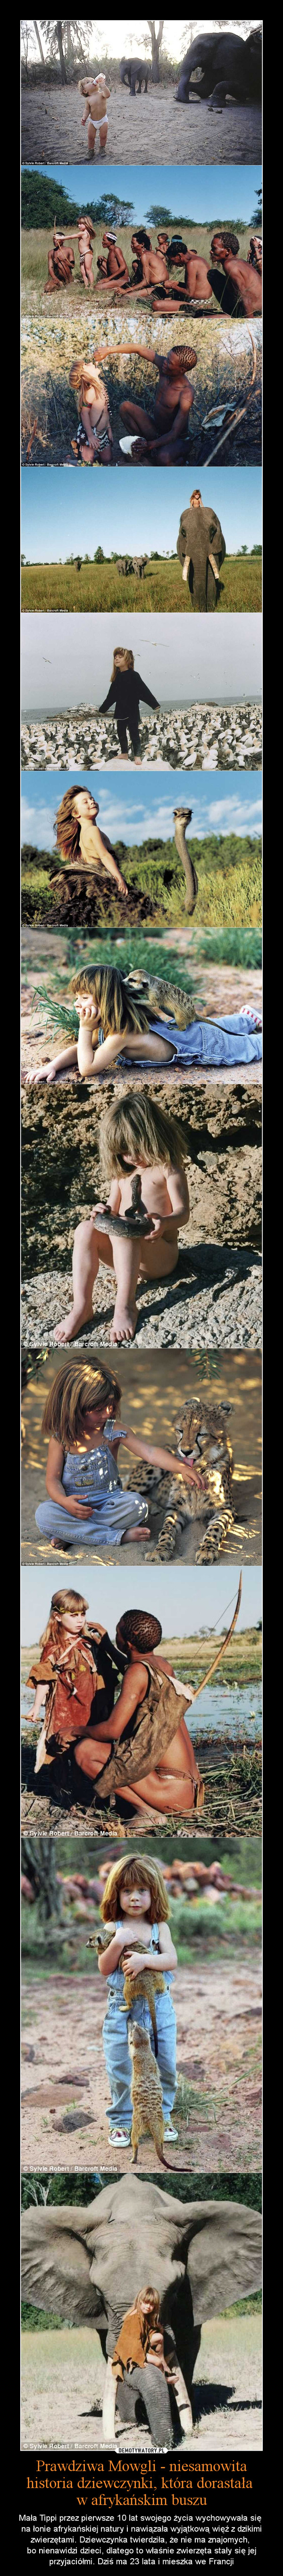 Prawdziwa Mowgli - niesamowita historia dziewczynki, która dorastała w afrykańskim buszu – Mała Tippi przez pierwsze 10 lat swojego życia wychowywała się na łonie afrykańskiej natury i nawiązała wyjątkową więź z dzikimi zwierzętami. Dziewczynka twierdziła, że nie ma znajomych, bo nienawidzi dzieci, dlatego to właśnie zwierzęta stały się jej przyjaciółmi. Dziś ma 23 lata i mieszka we Francji 